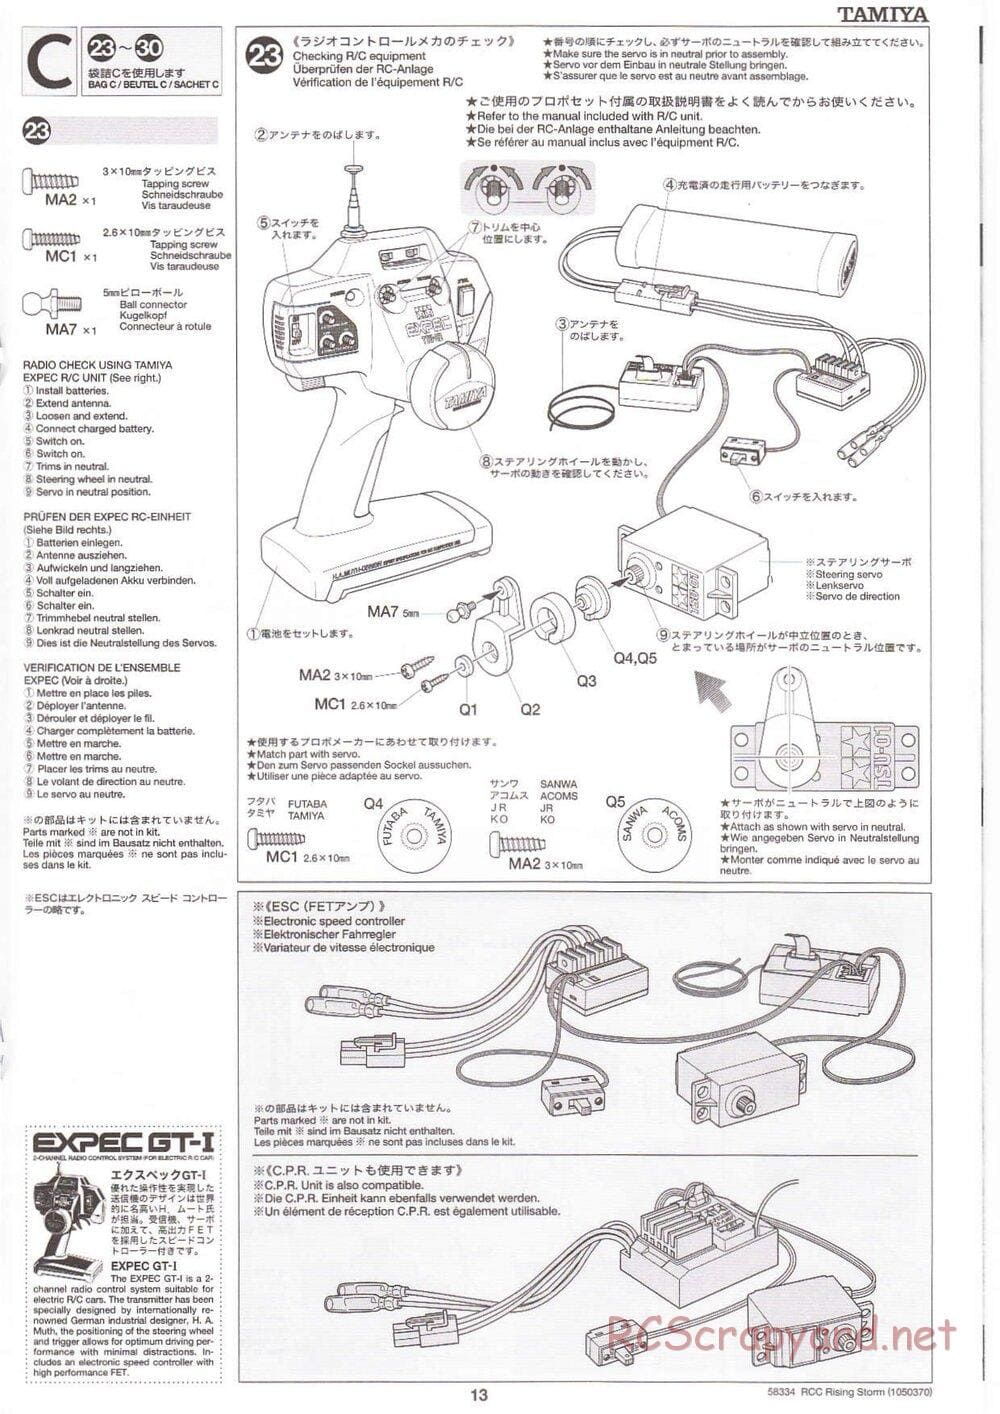 Tamiya - Rising Storm Chassis - Manual - Page 13